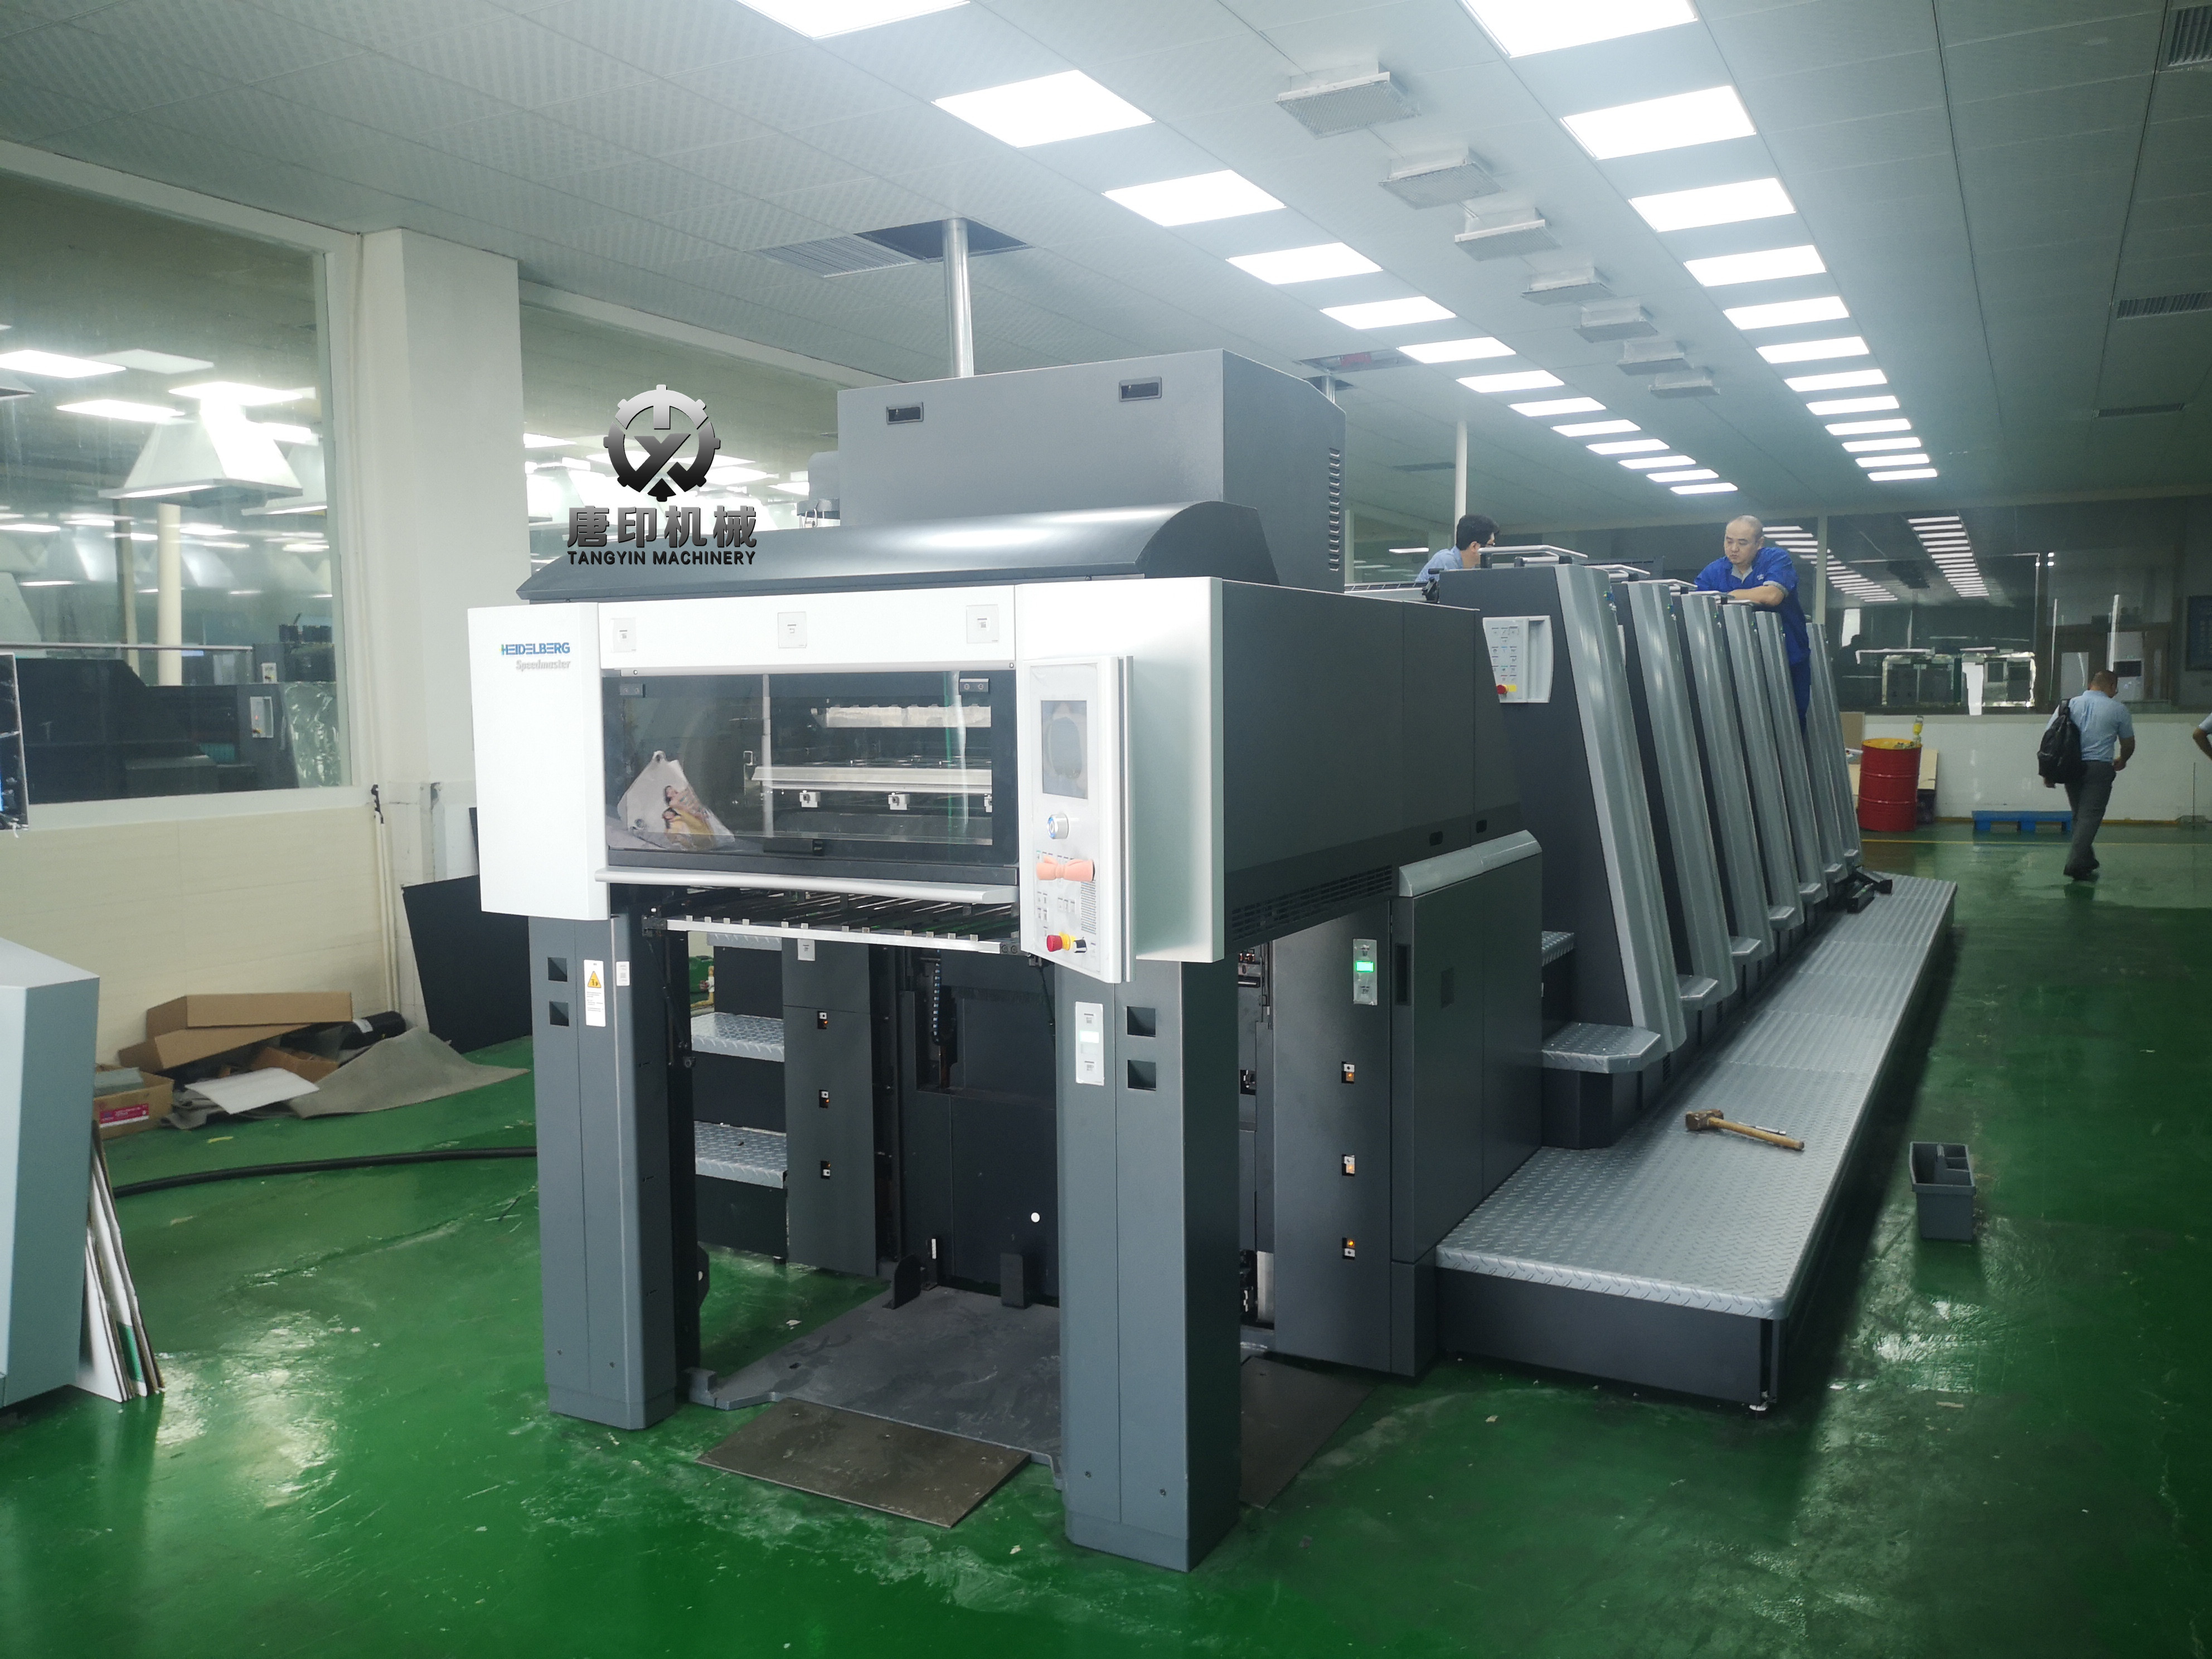 海德堡XL75集尘器TY-100JC  海德堡集尘器原装配套生产厂家供应  印刷机集尘器图片